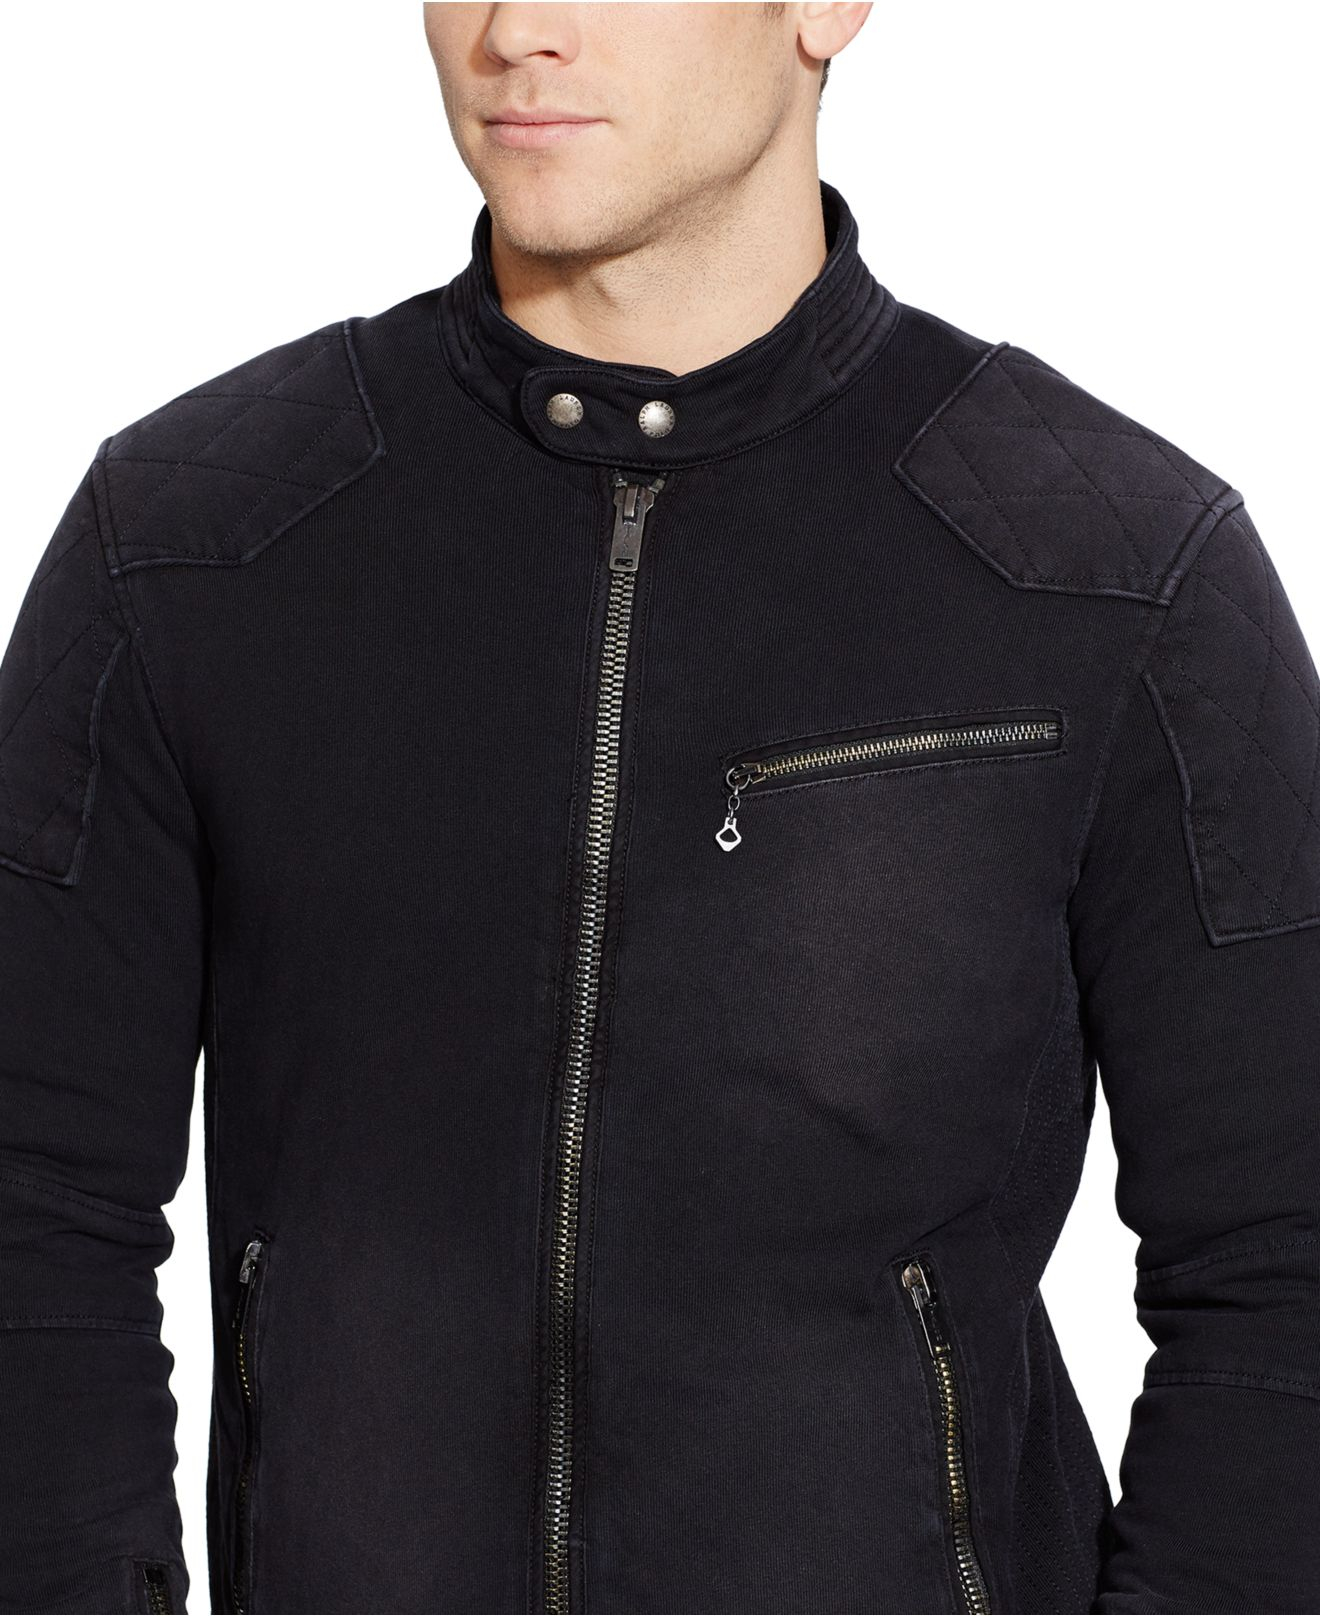 Lyst Polo Ralph Lauren Knit Moto Jacket in Black for Men